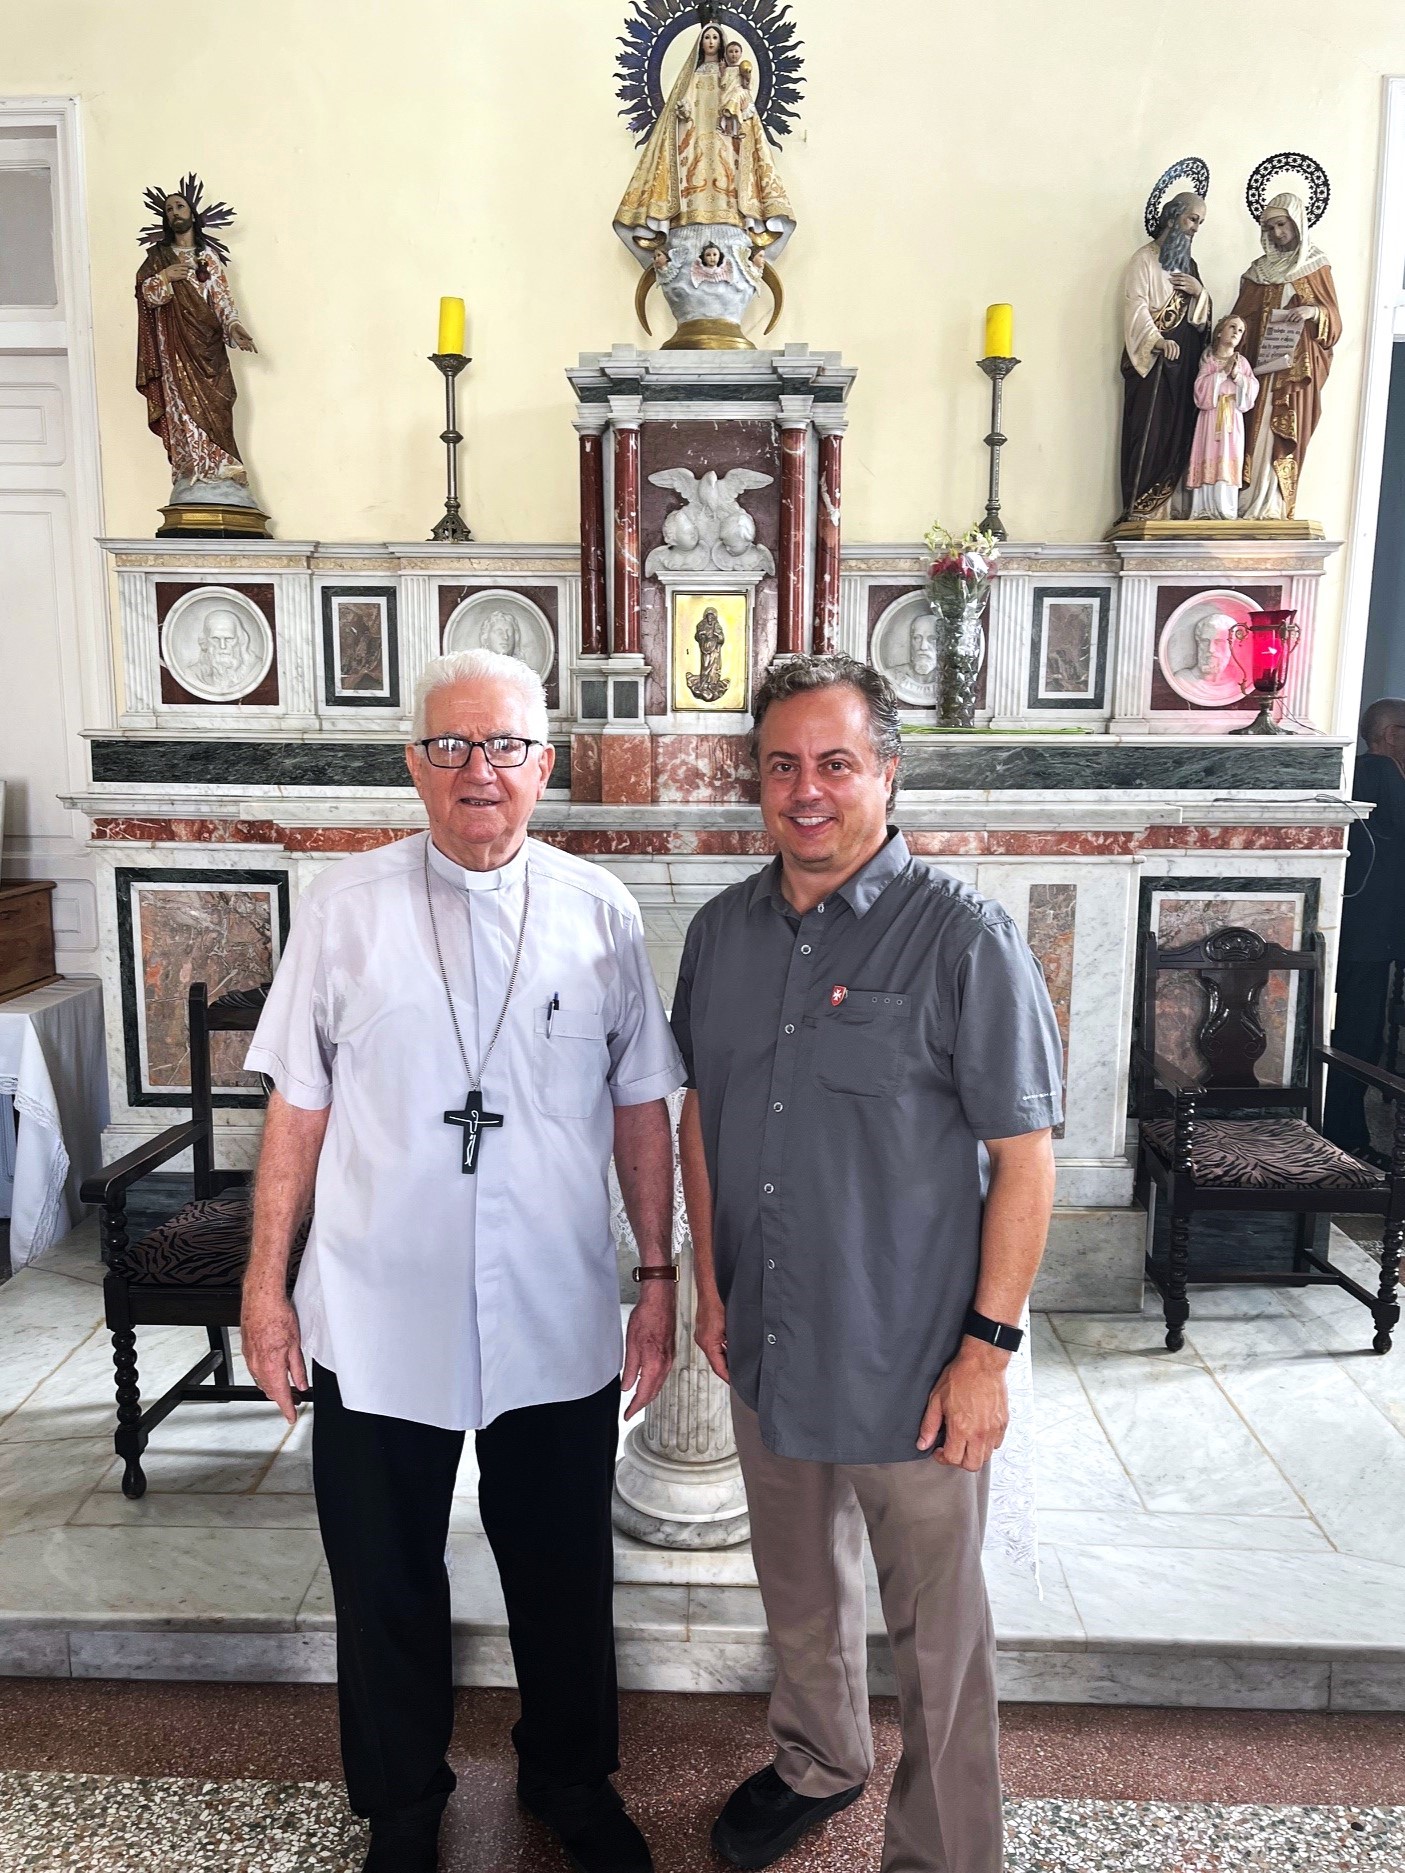 El Consejero de la Embajada visita al Arzobispo de Santiago de Cuba